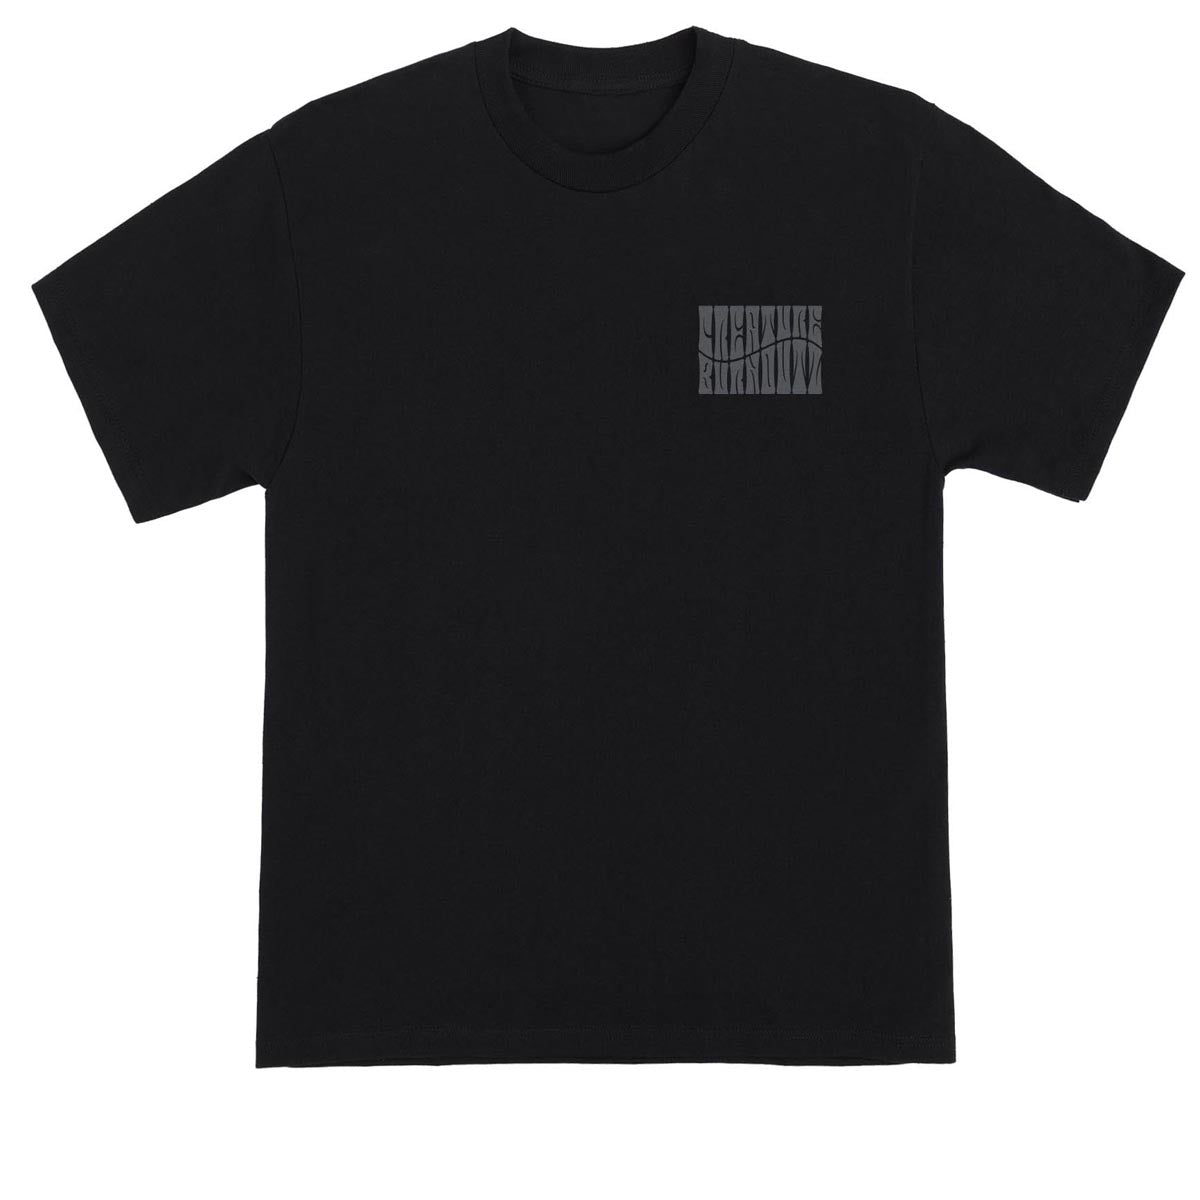 Creature Burnoutz VC T-Shirt - Black image 2